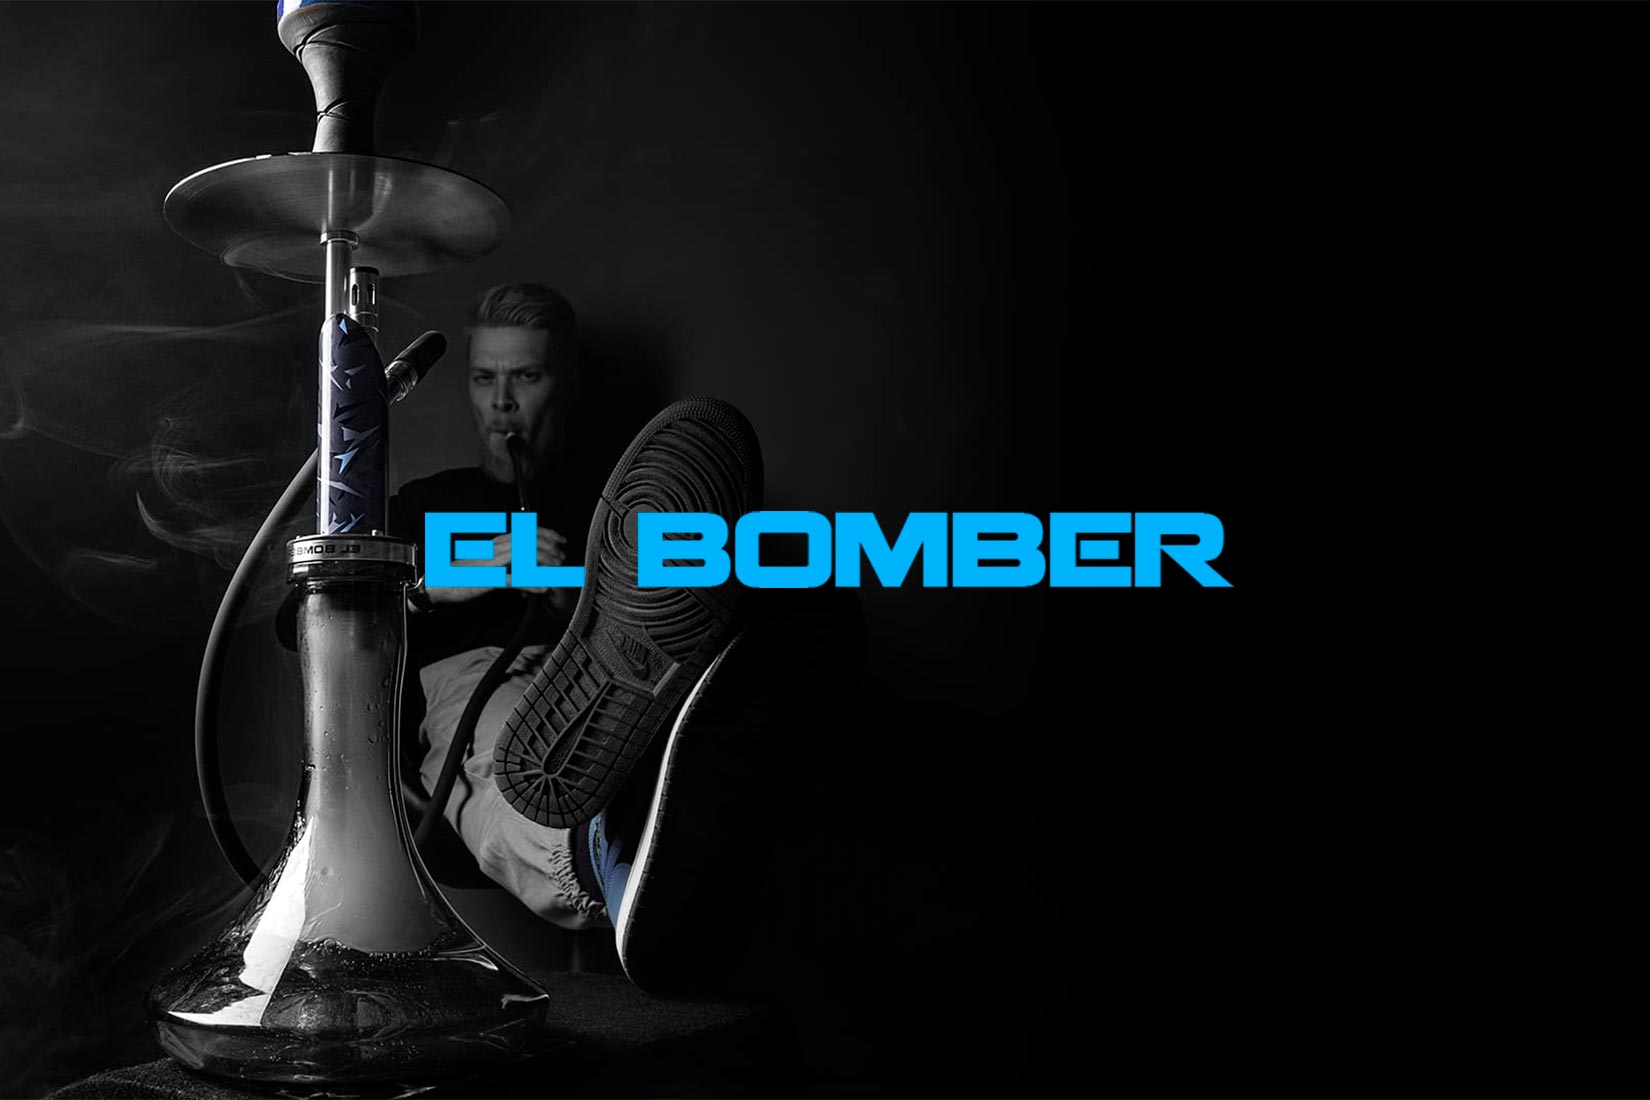 EL BOMBER (Эль Бомбер) — кальяны и аксессуары для кальянов